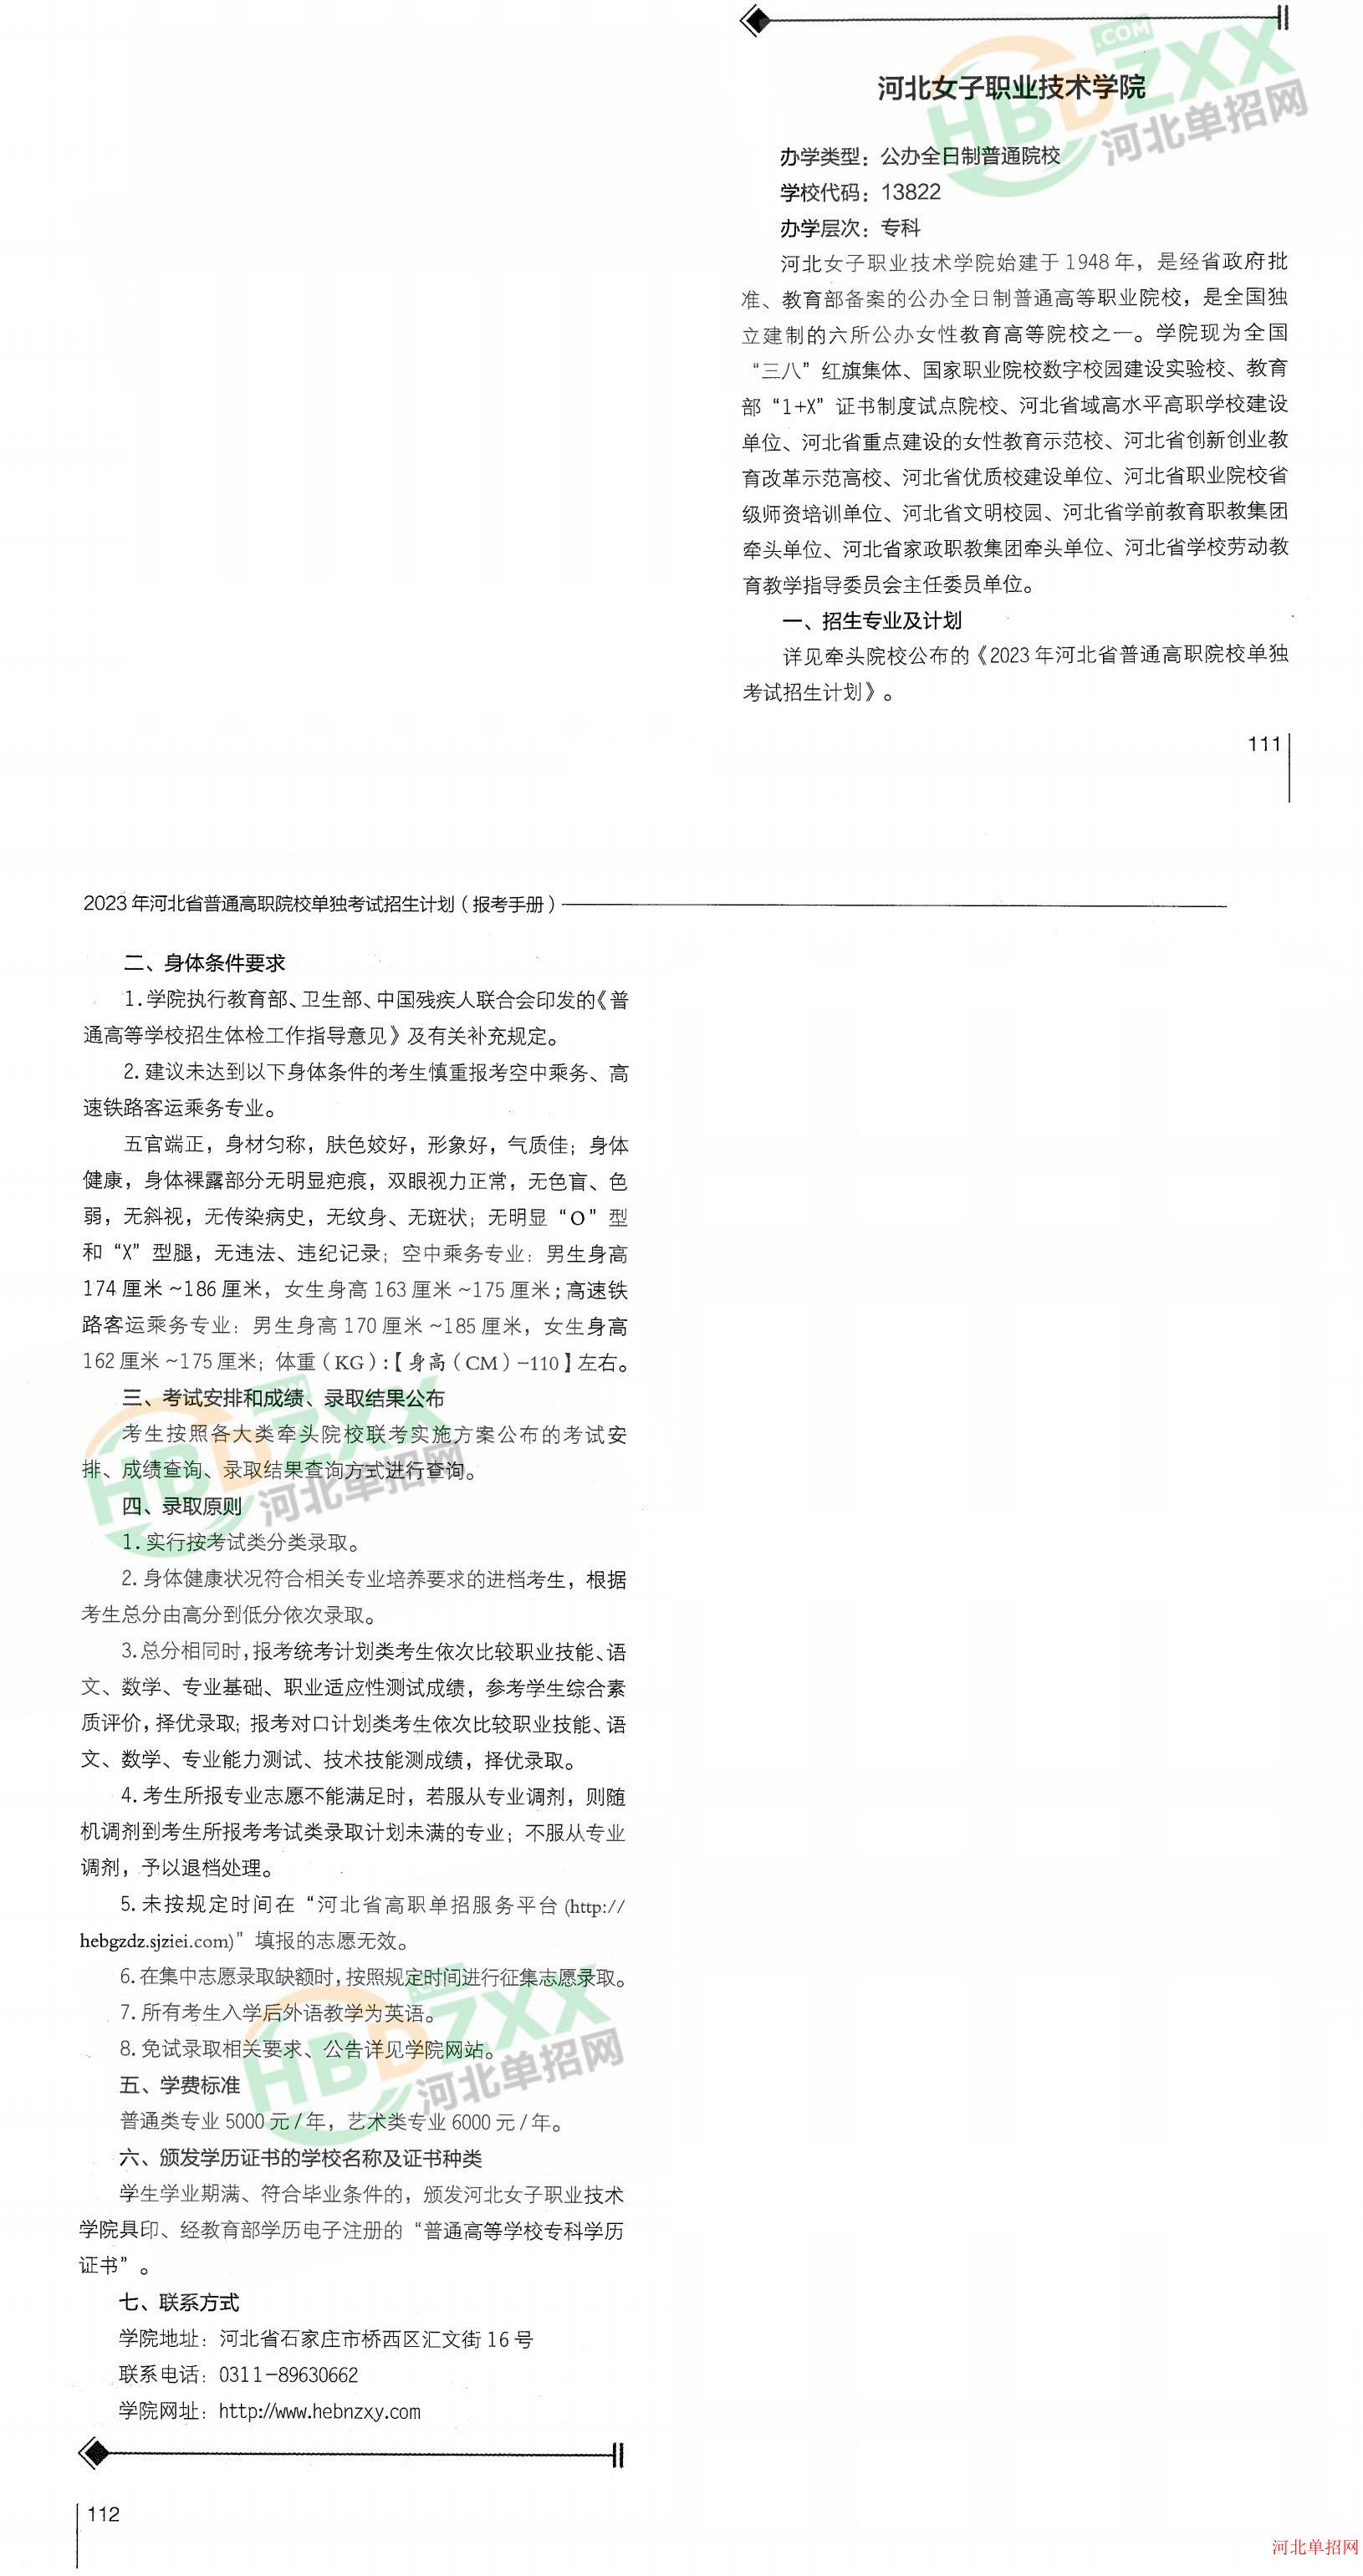 河北女子职业技术学院2023年单招招生简章 图1